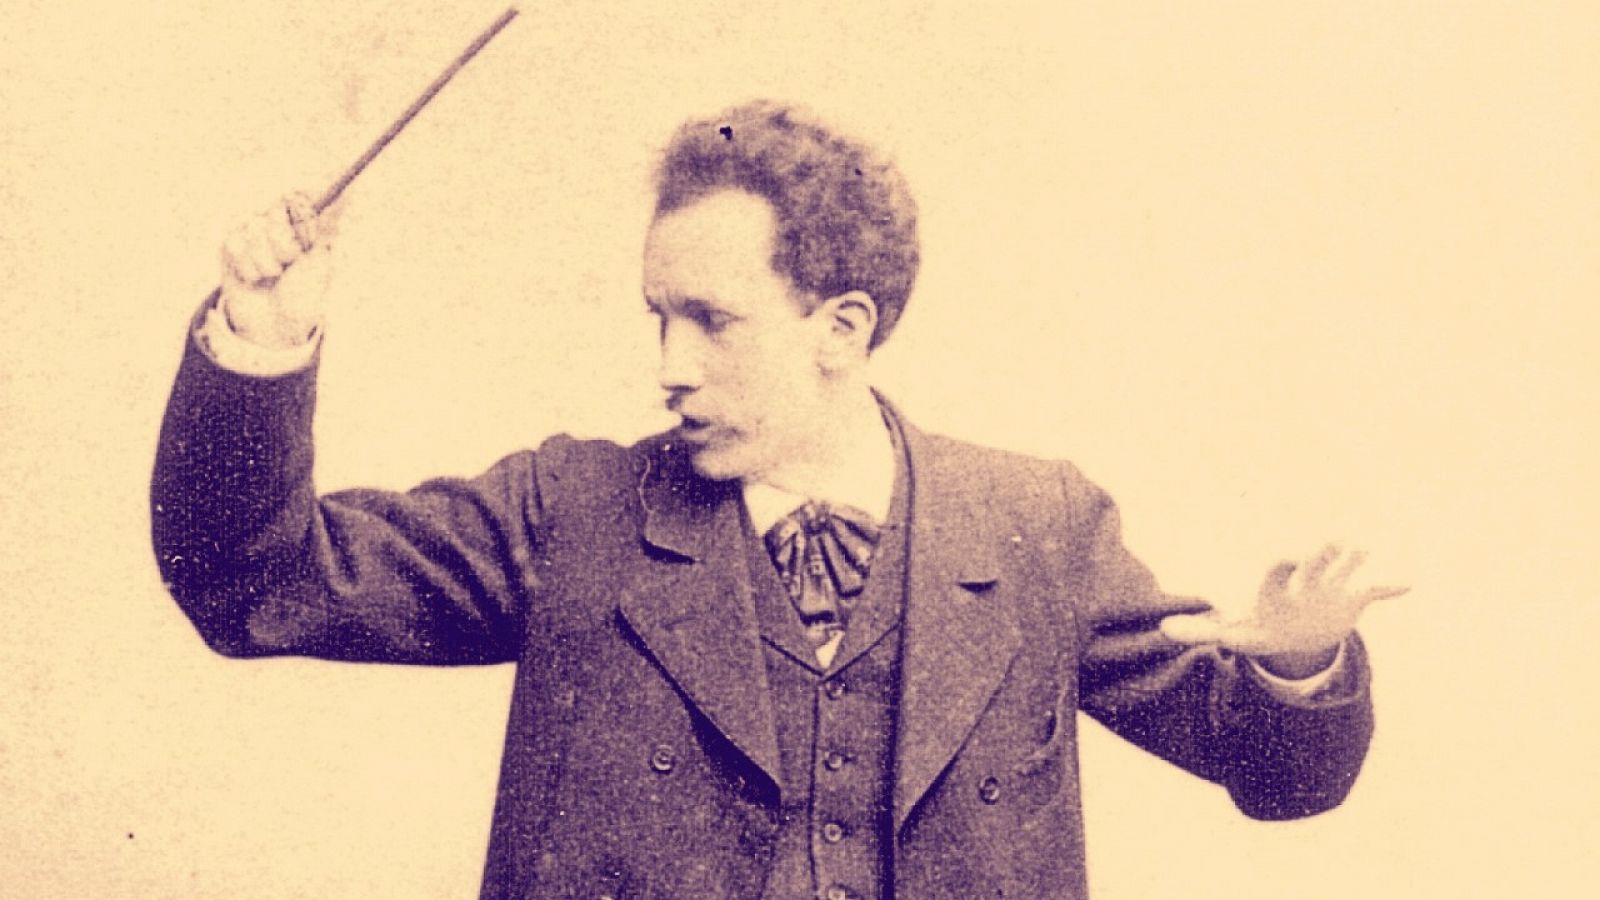 Radio Clásica te invita a disfrutar de la obra de Richard Strauss en su aniversario con 'Grandes ciclos'.